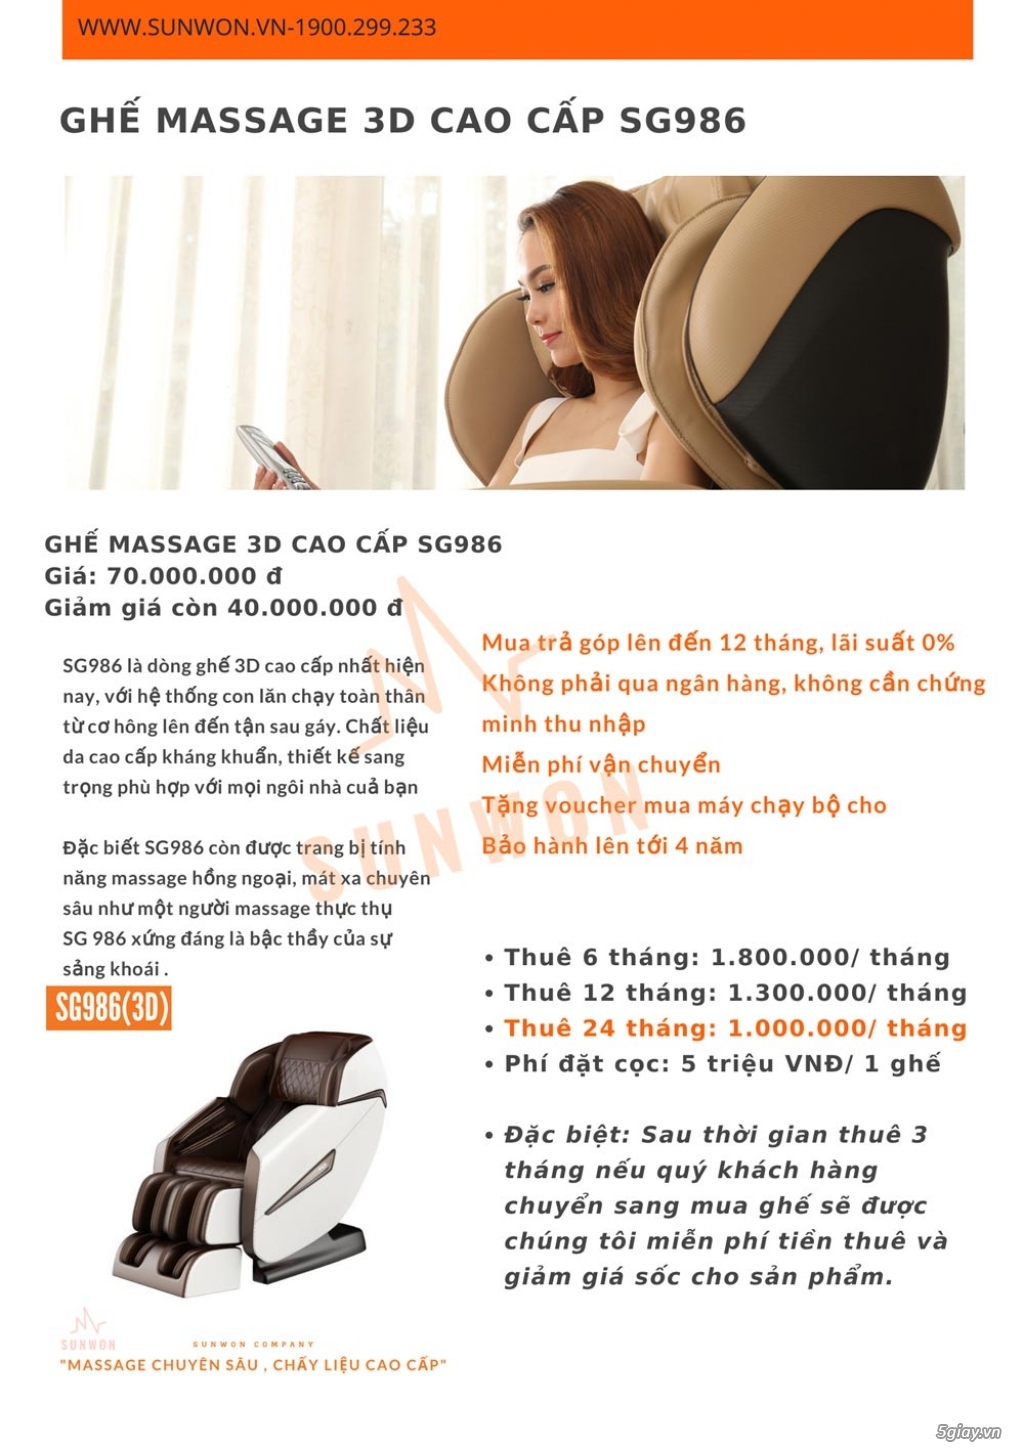 Cơ hội mua ghế massage trả góp với lãi suất 0% cùng Sunwon - 1